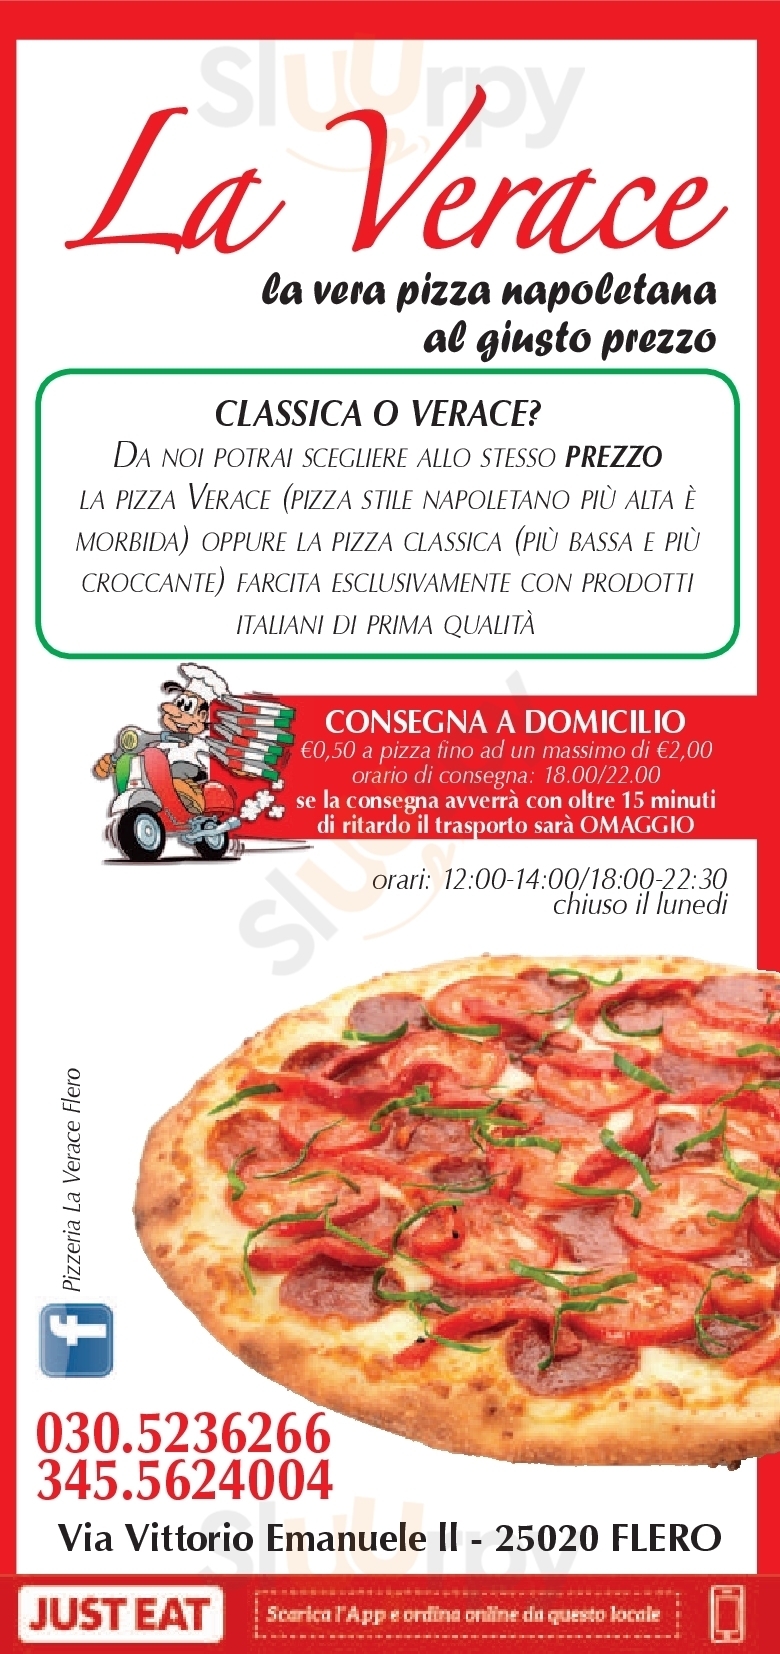 Pizzeria La Verace Flero menù 1 pagina